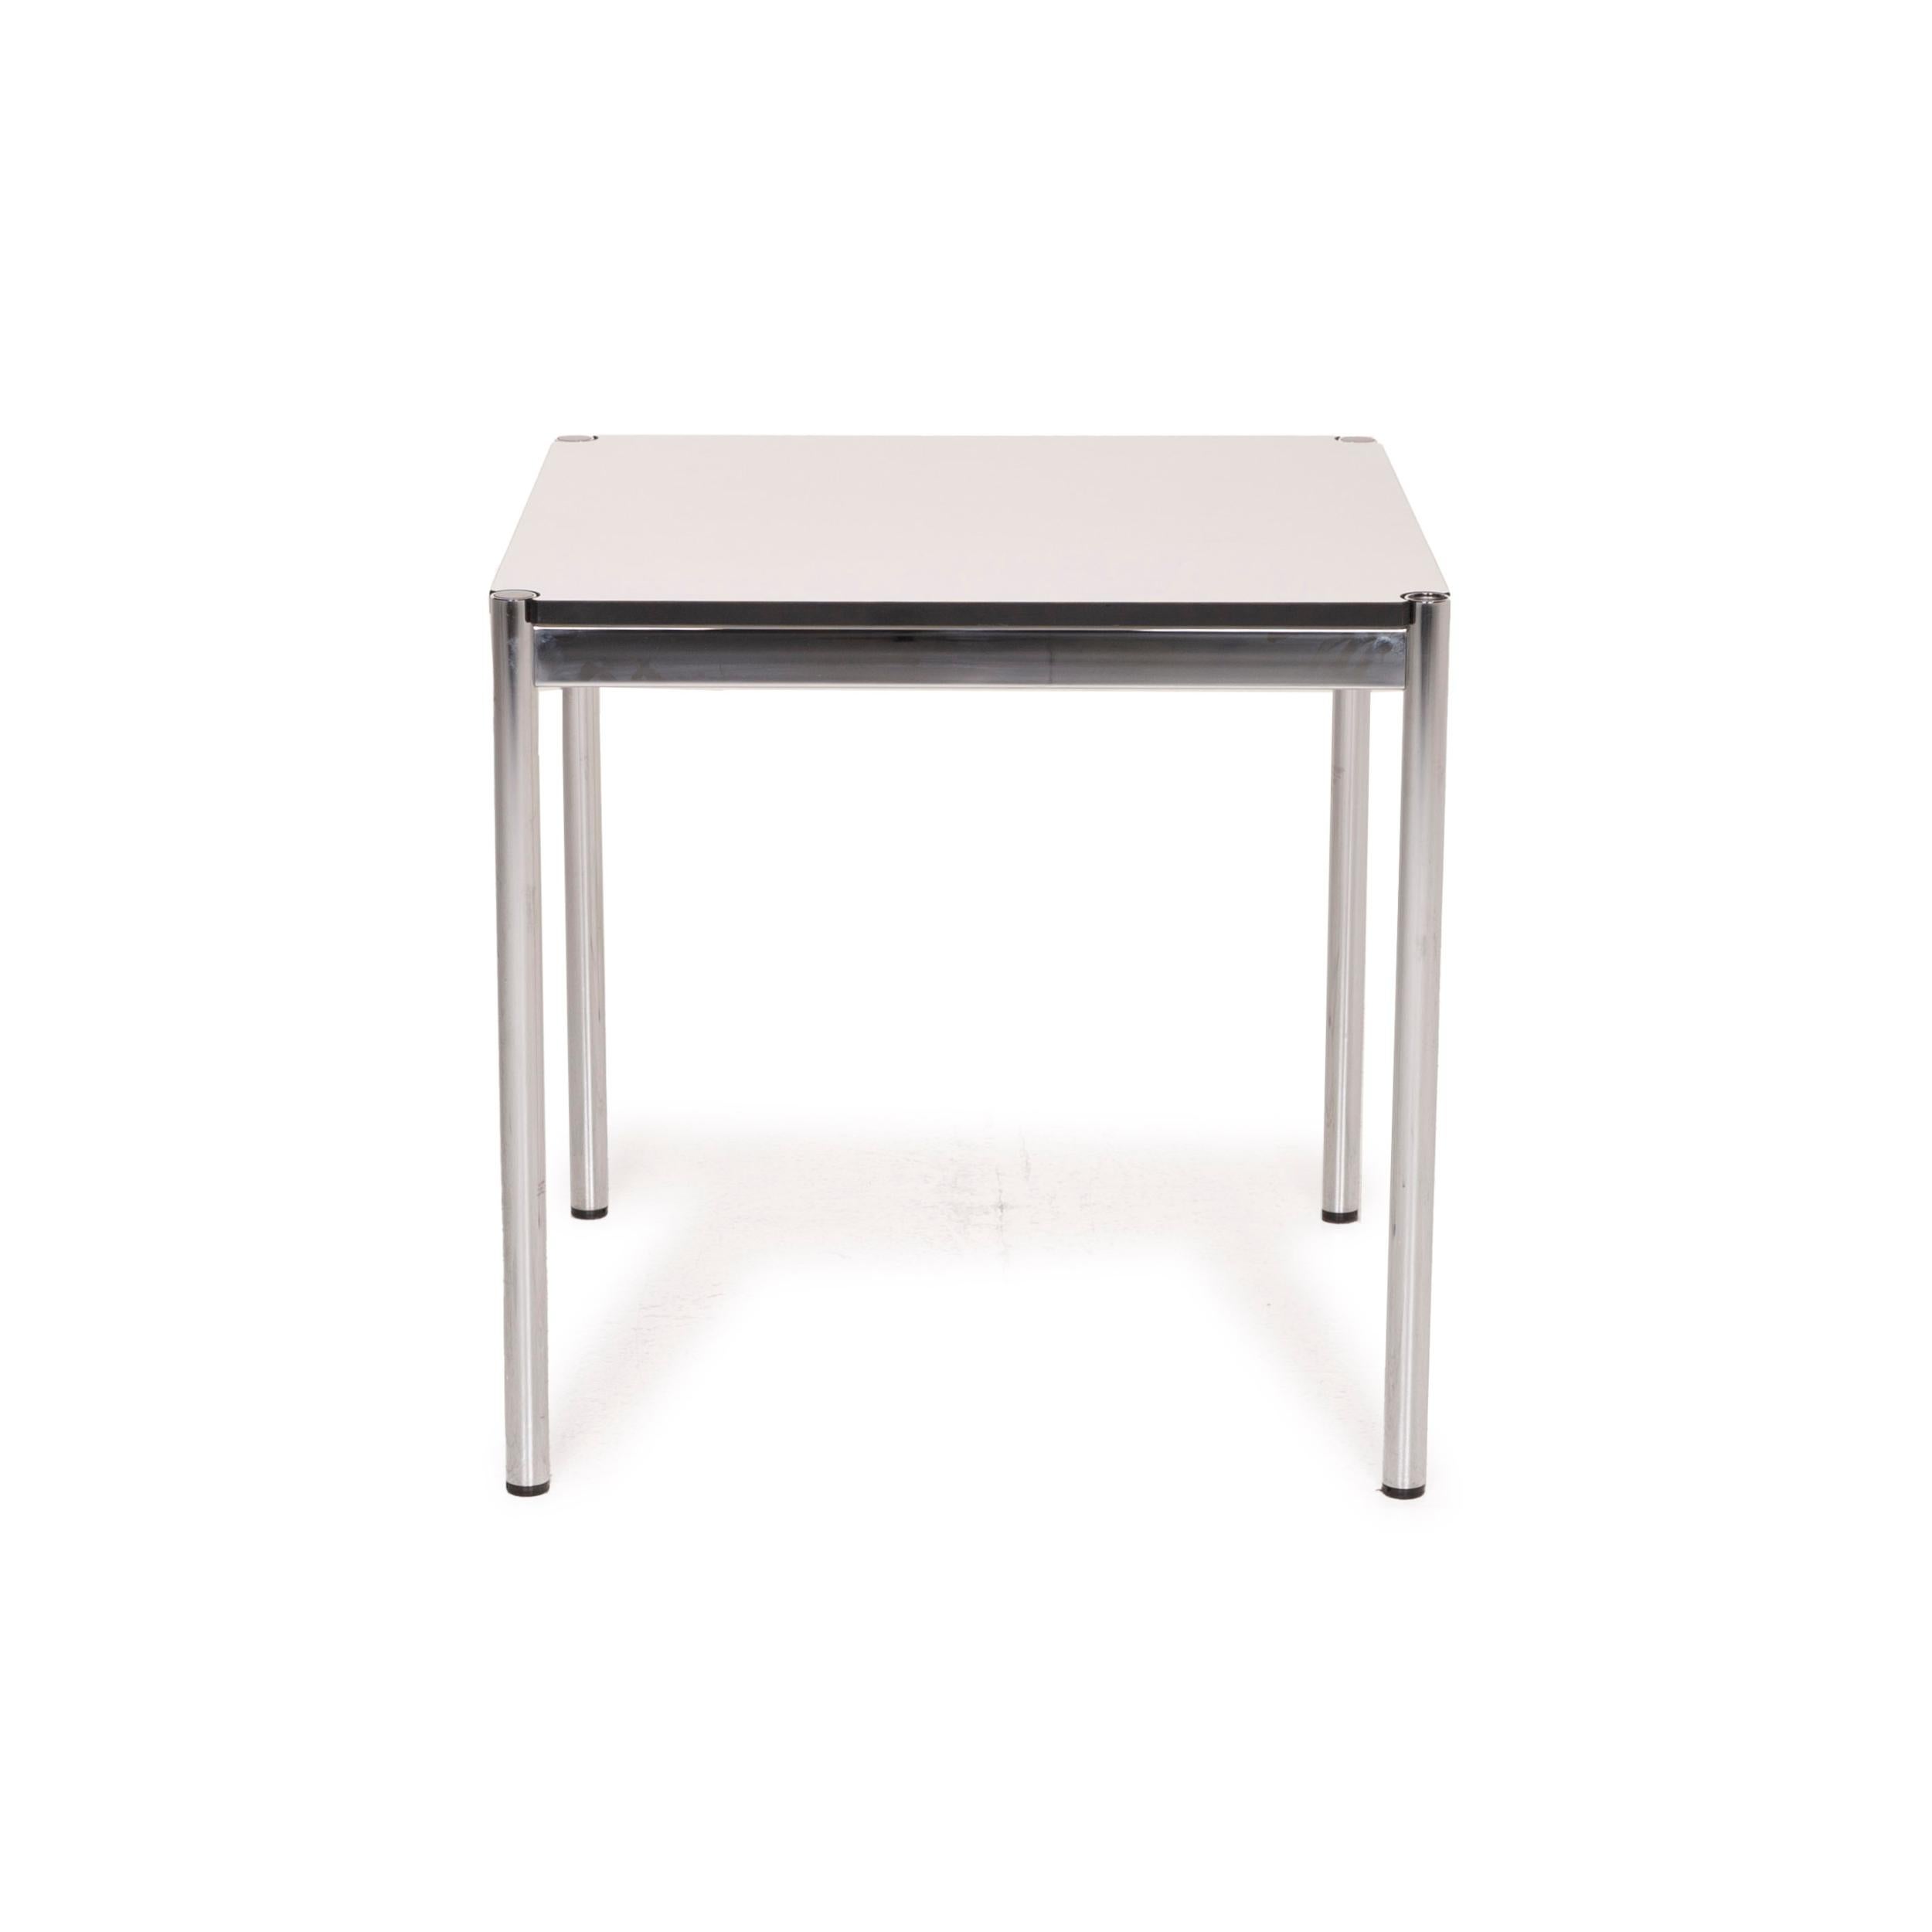 USM Haller Metal Table White Desk Chrome 2